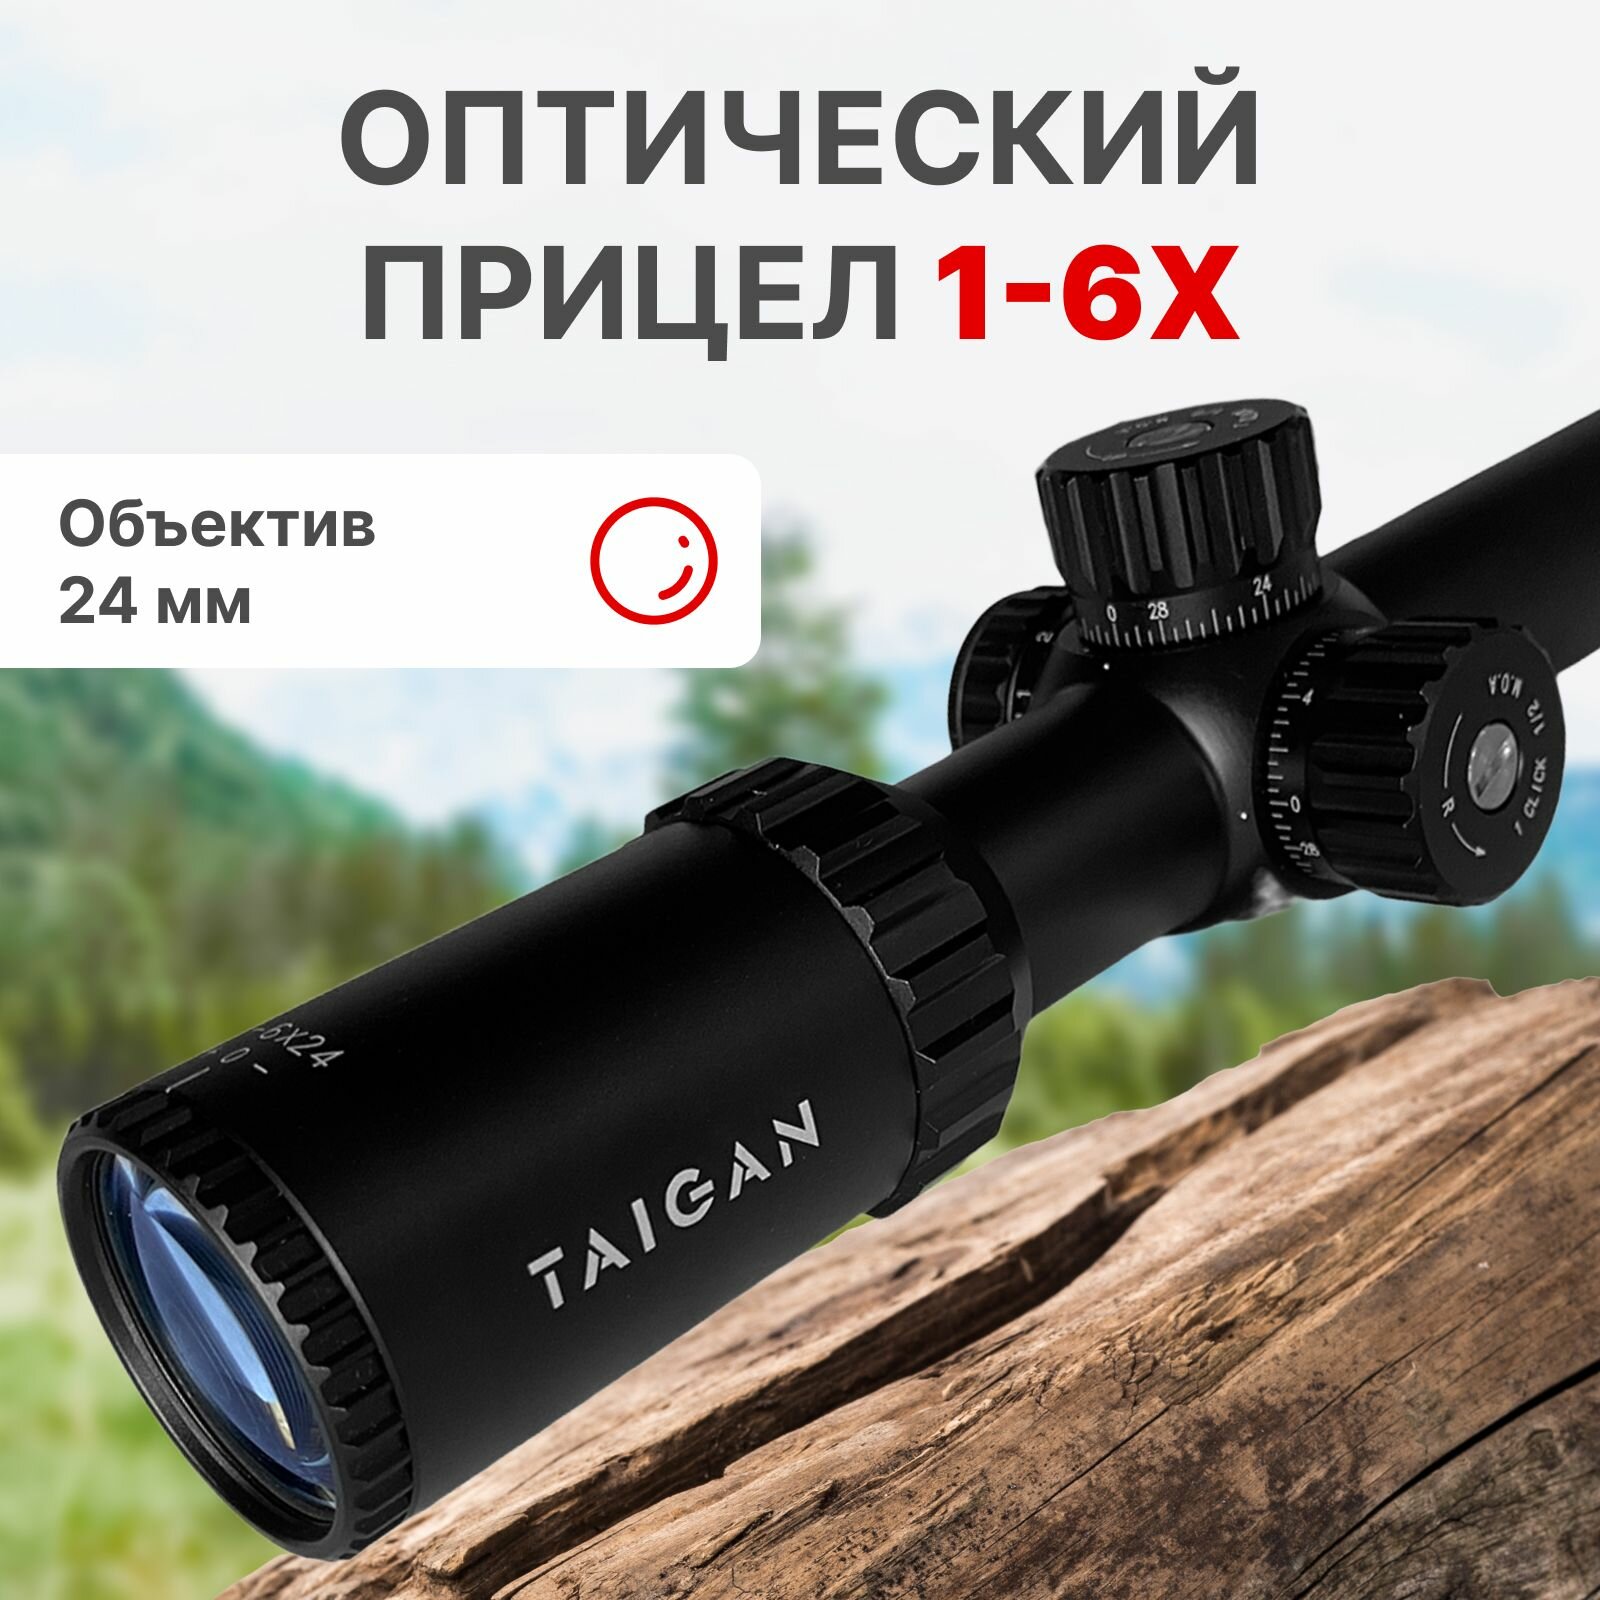 Прицел оптический Taigan MR 1-6X24IR-RU для охоты